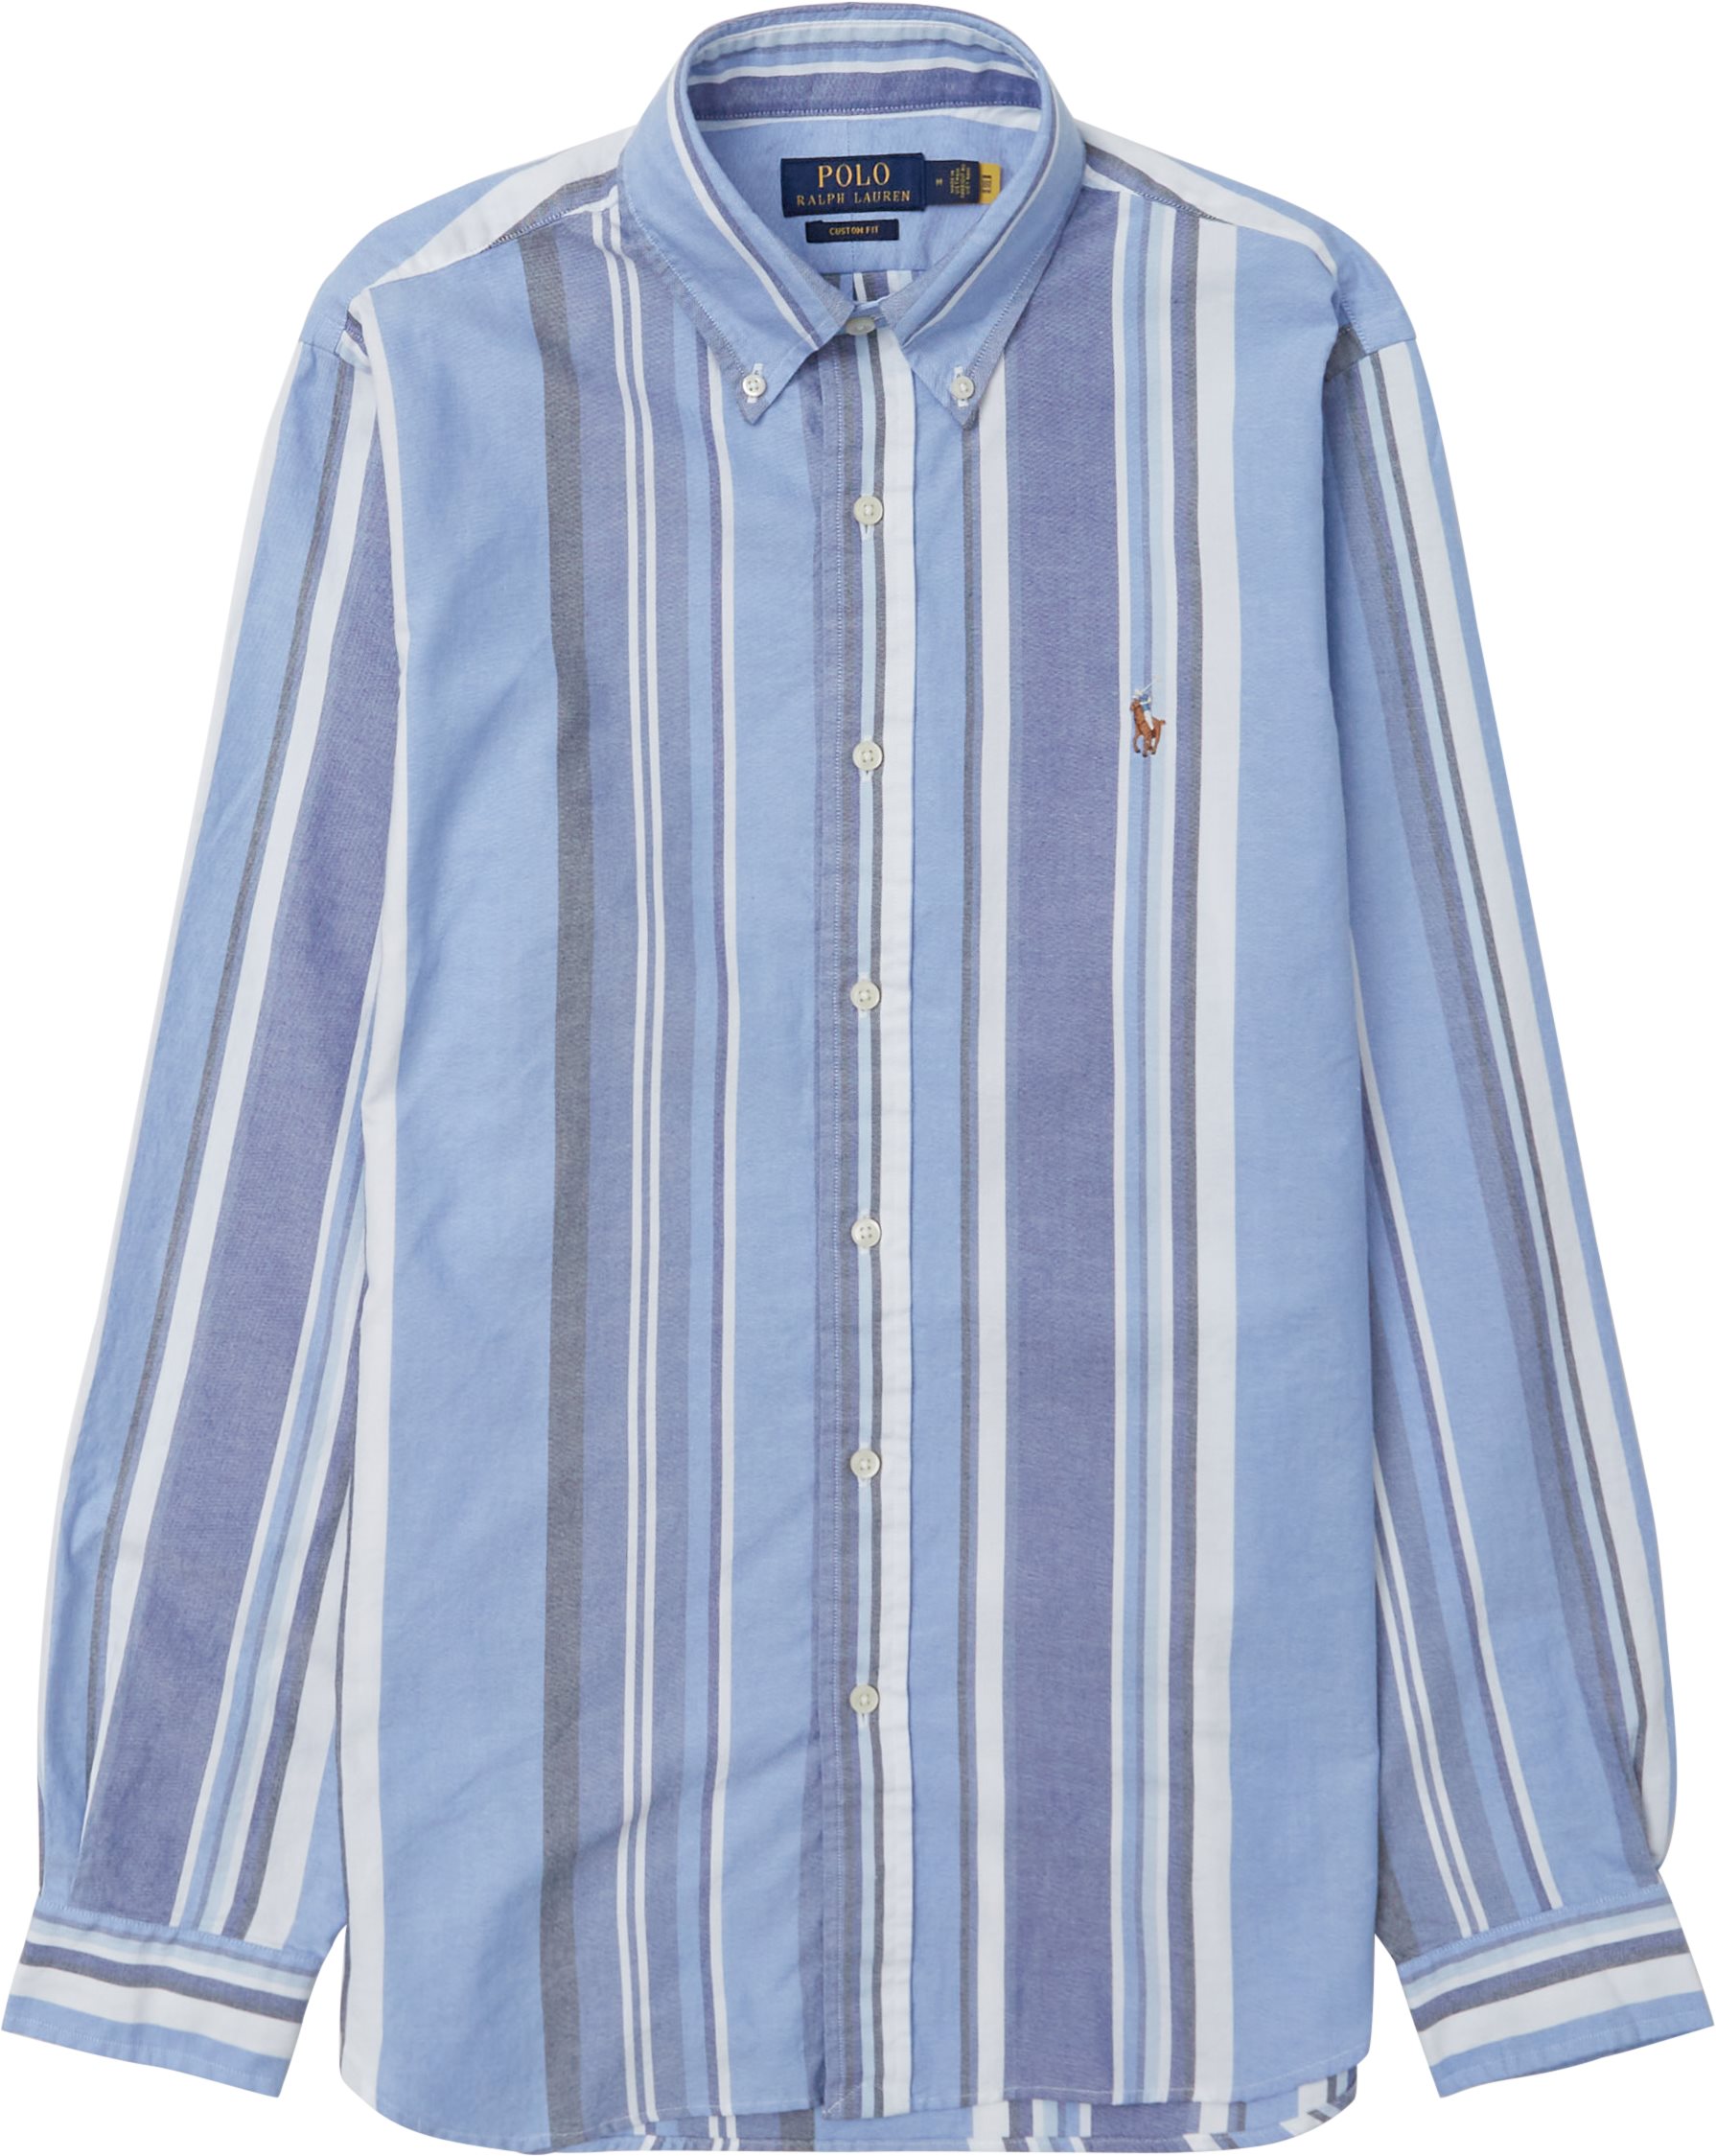 Polo Ralph Lauren Shirts 710867304 Blue